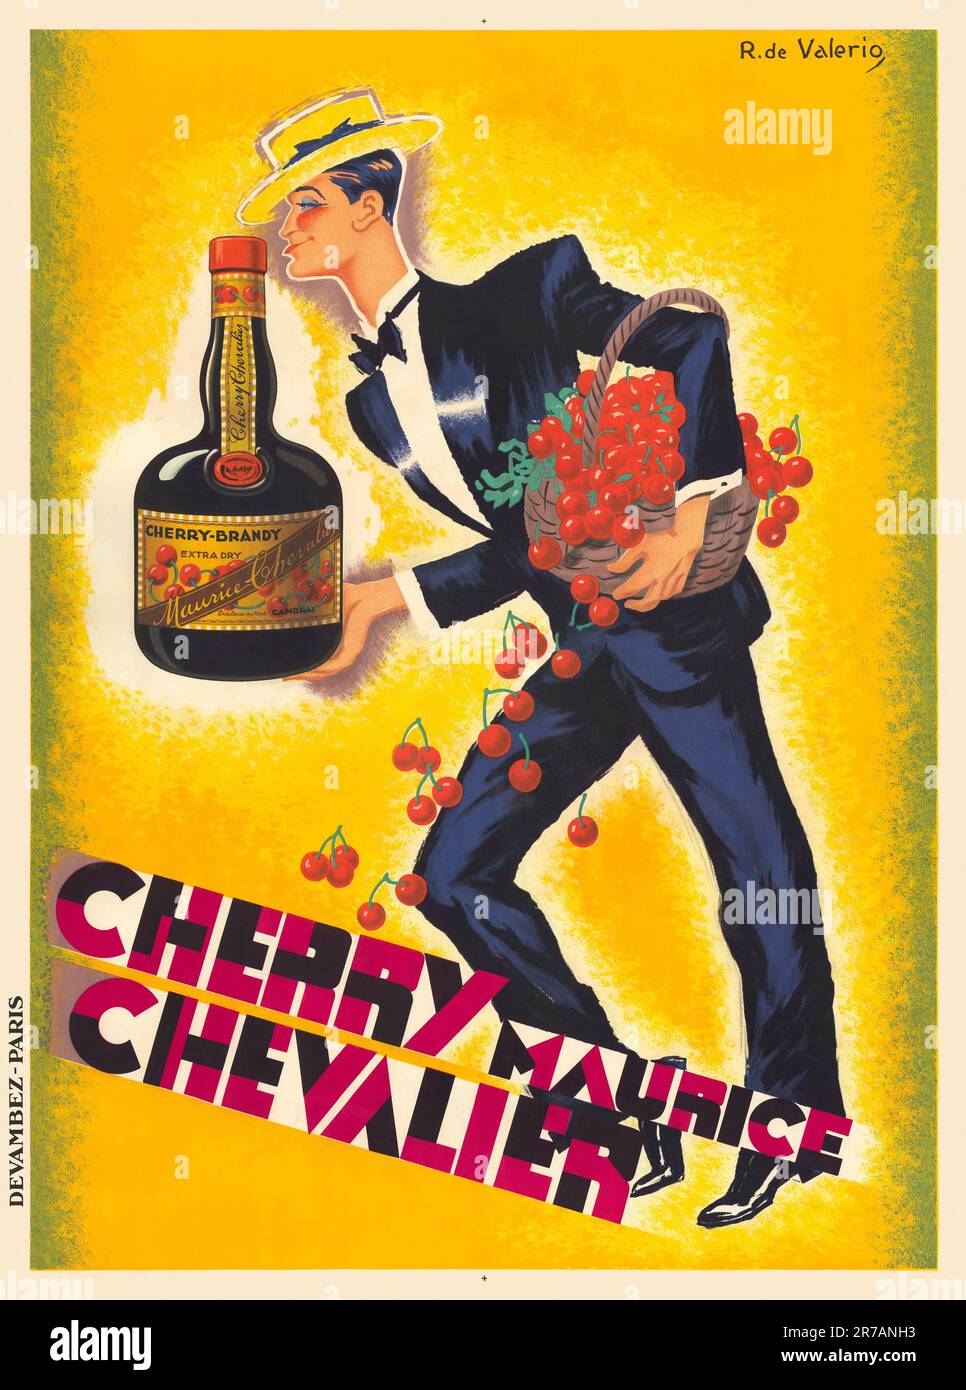 Cherry Maurice Chevalier von Roger de Valerio (1886-1951). Poster wurde 1930 in Frankreich veröffentlicht. Stockfoto